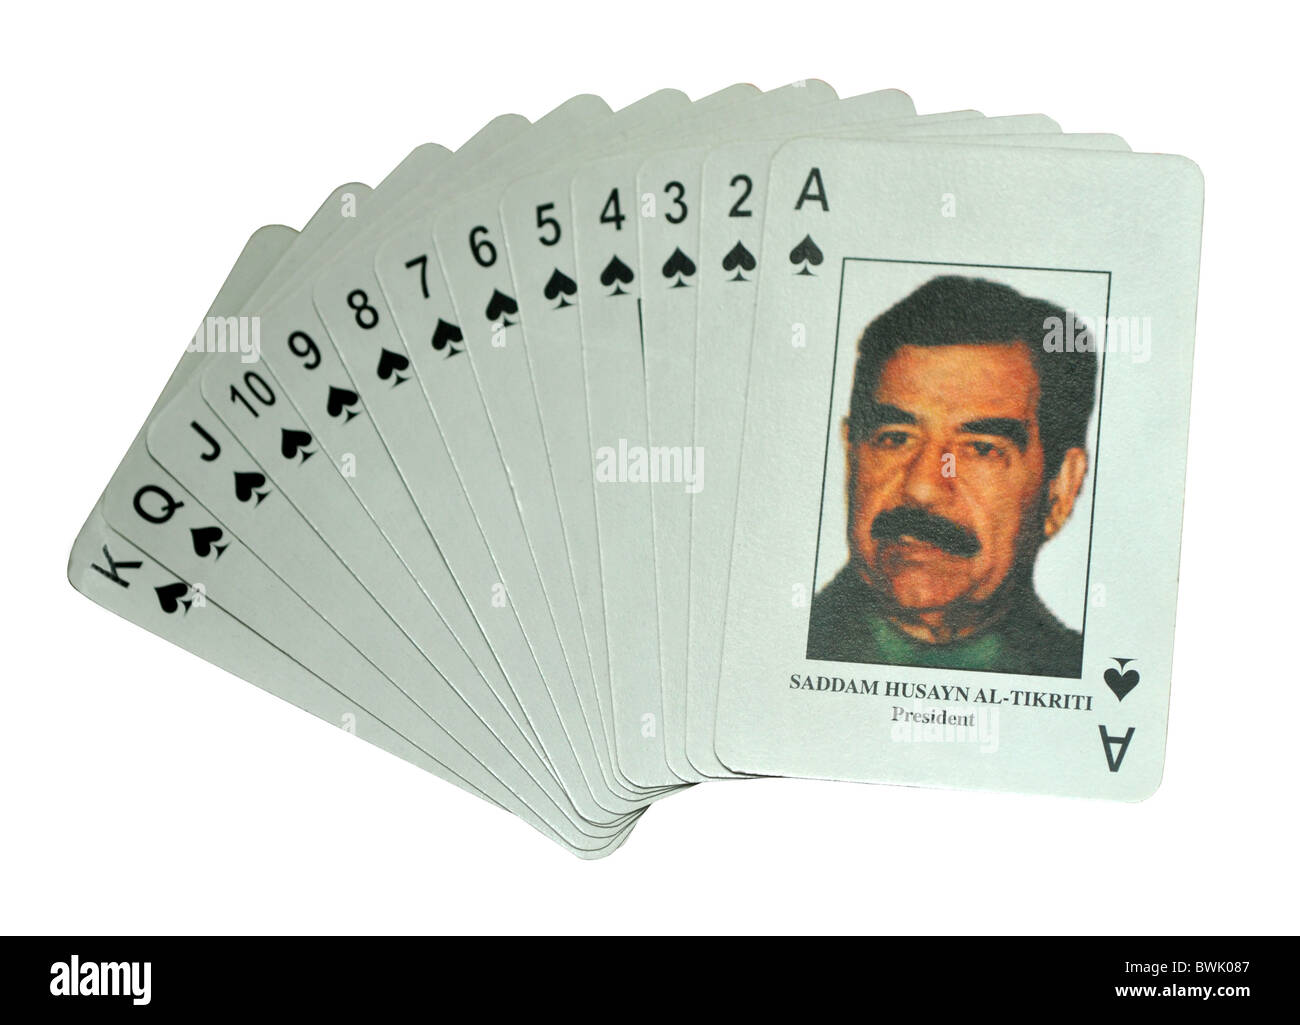 Saddam Hussein Spielkarten, Irak-Krieg most wanted Spielkarten Stockfoto